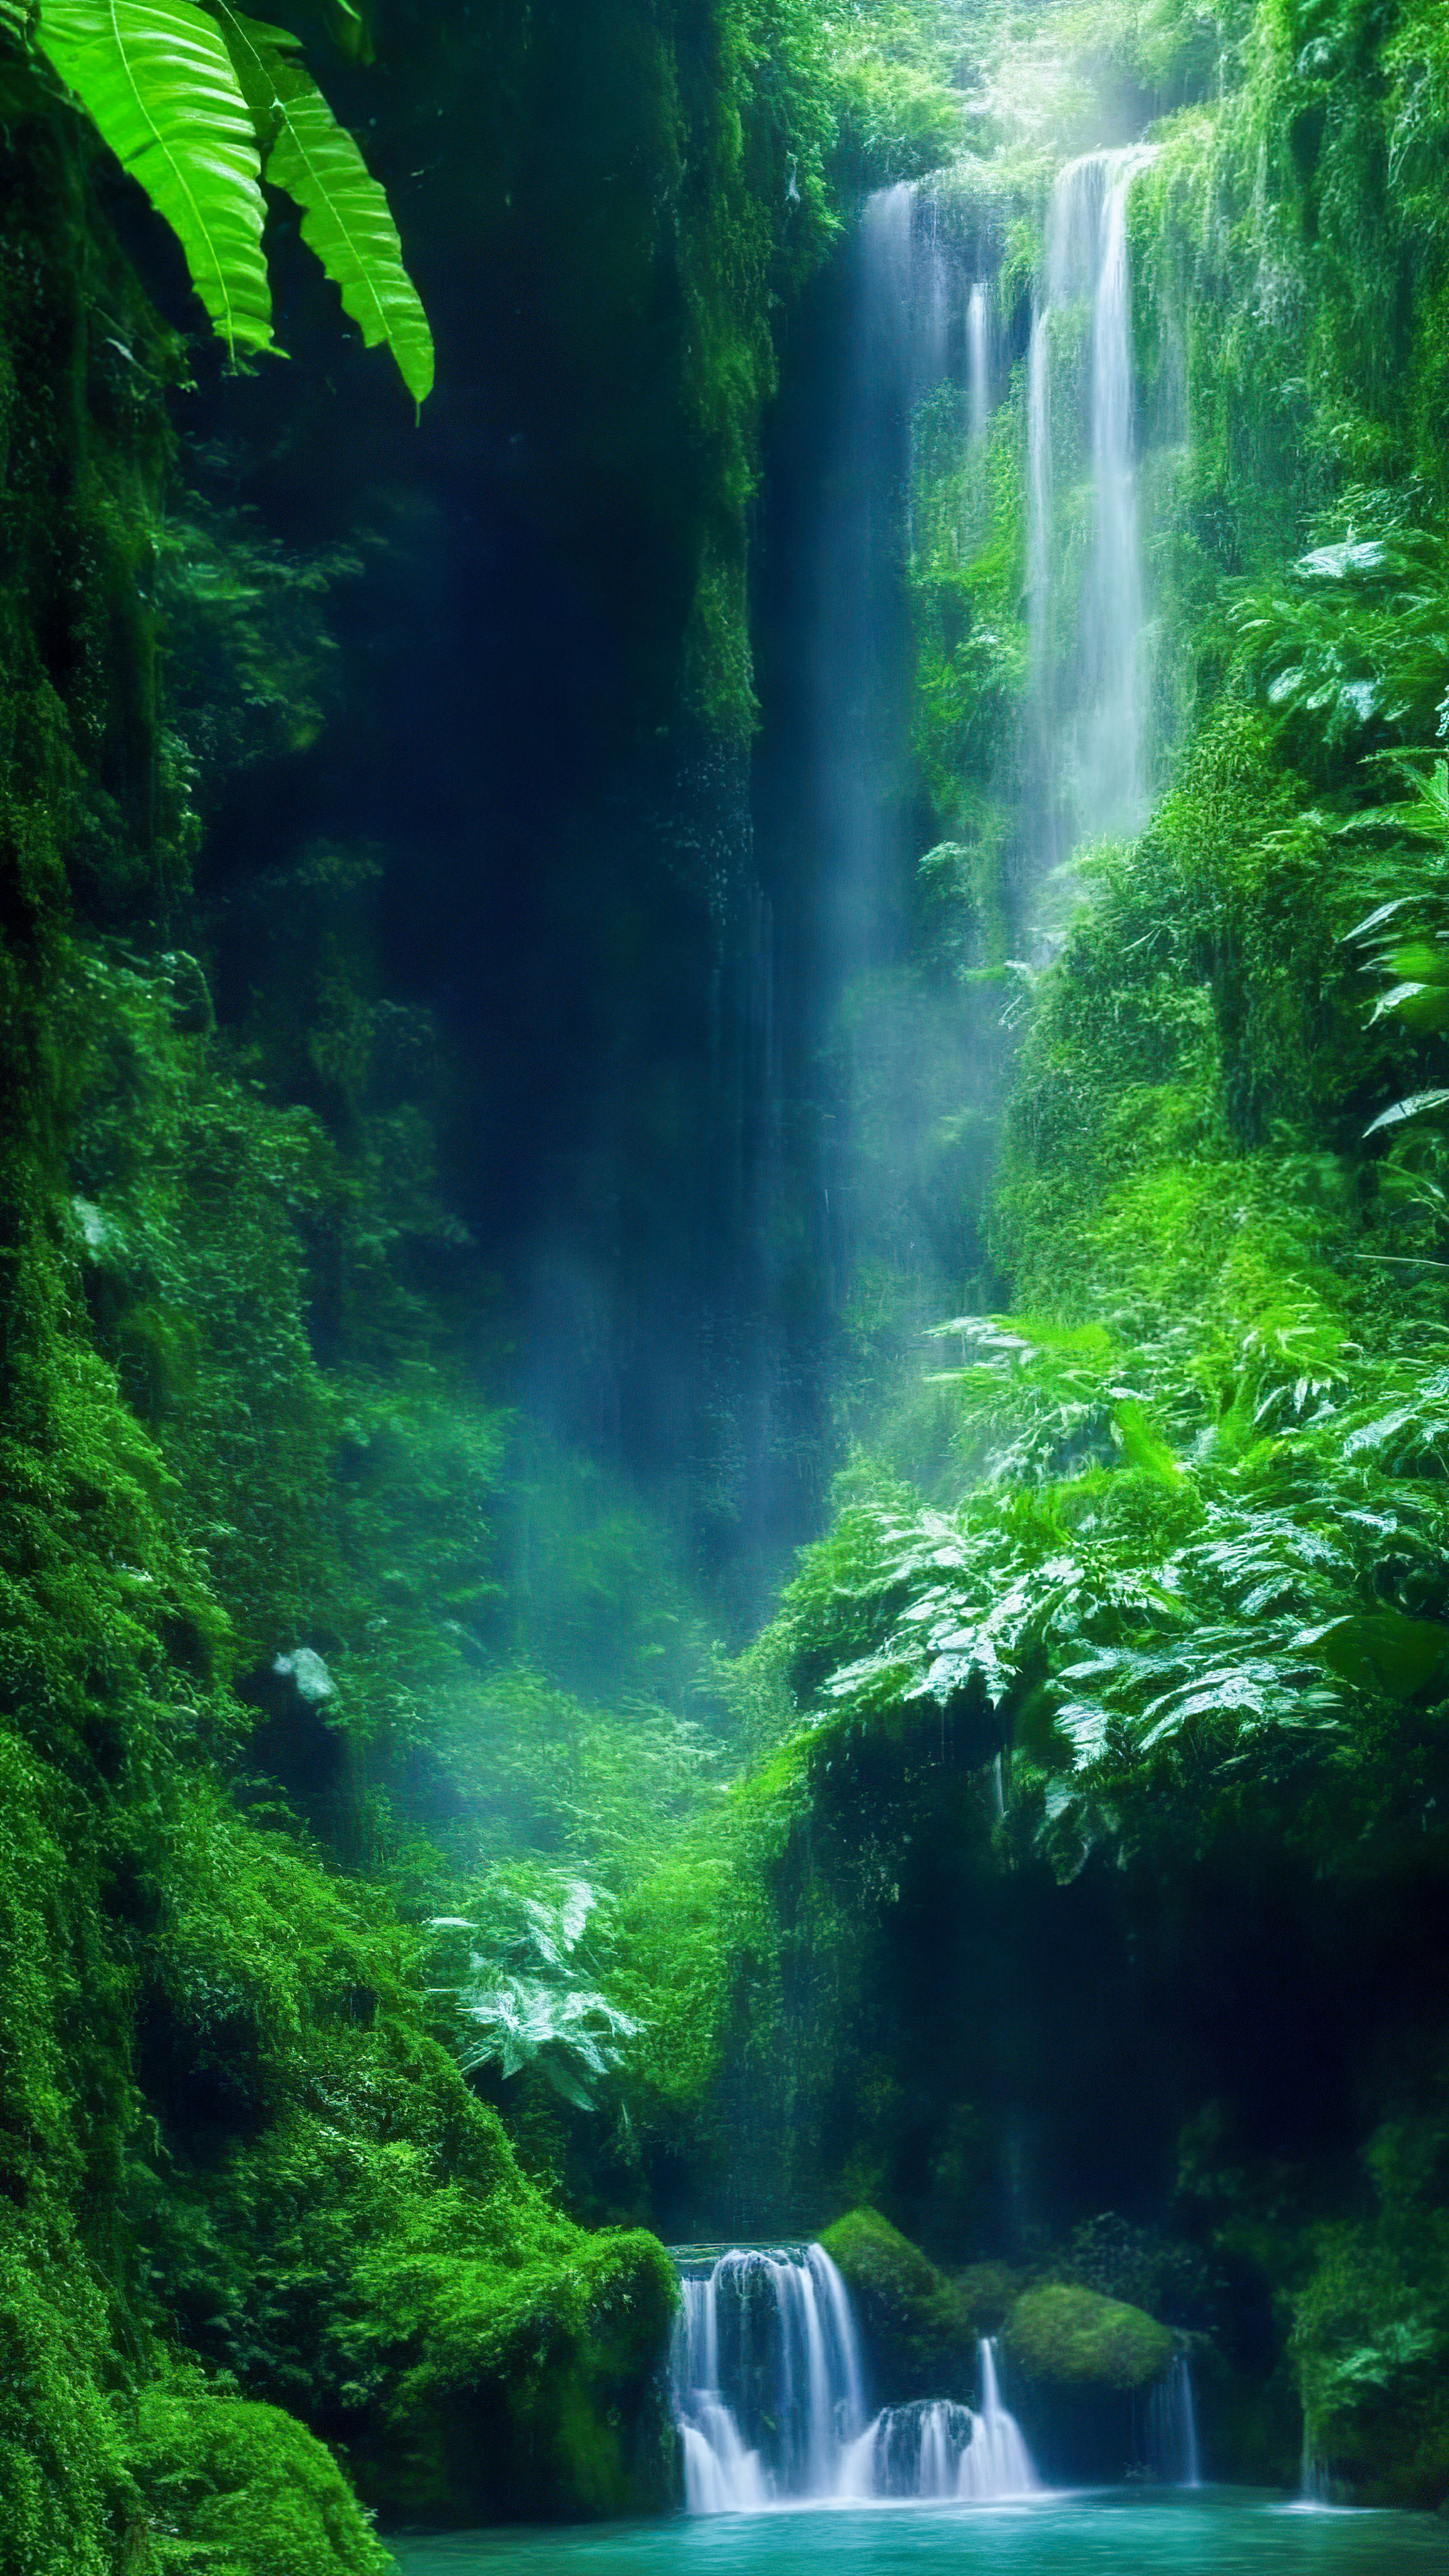 Perdez-vous dans la magie de notre fond d'écran de paysage esthétique, mettant en scène une cascade enchantée cachée au cœur de la luxuriante forêt tropicale émeraude.